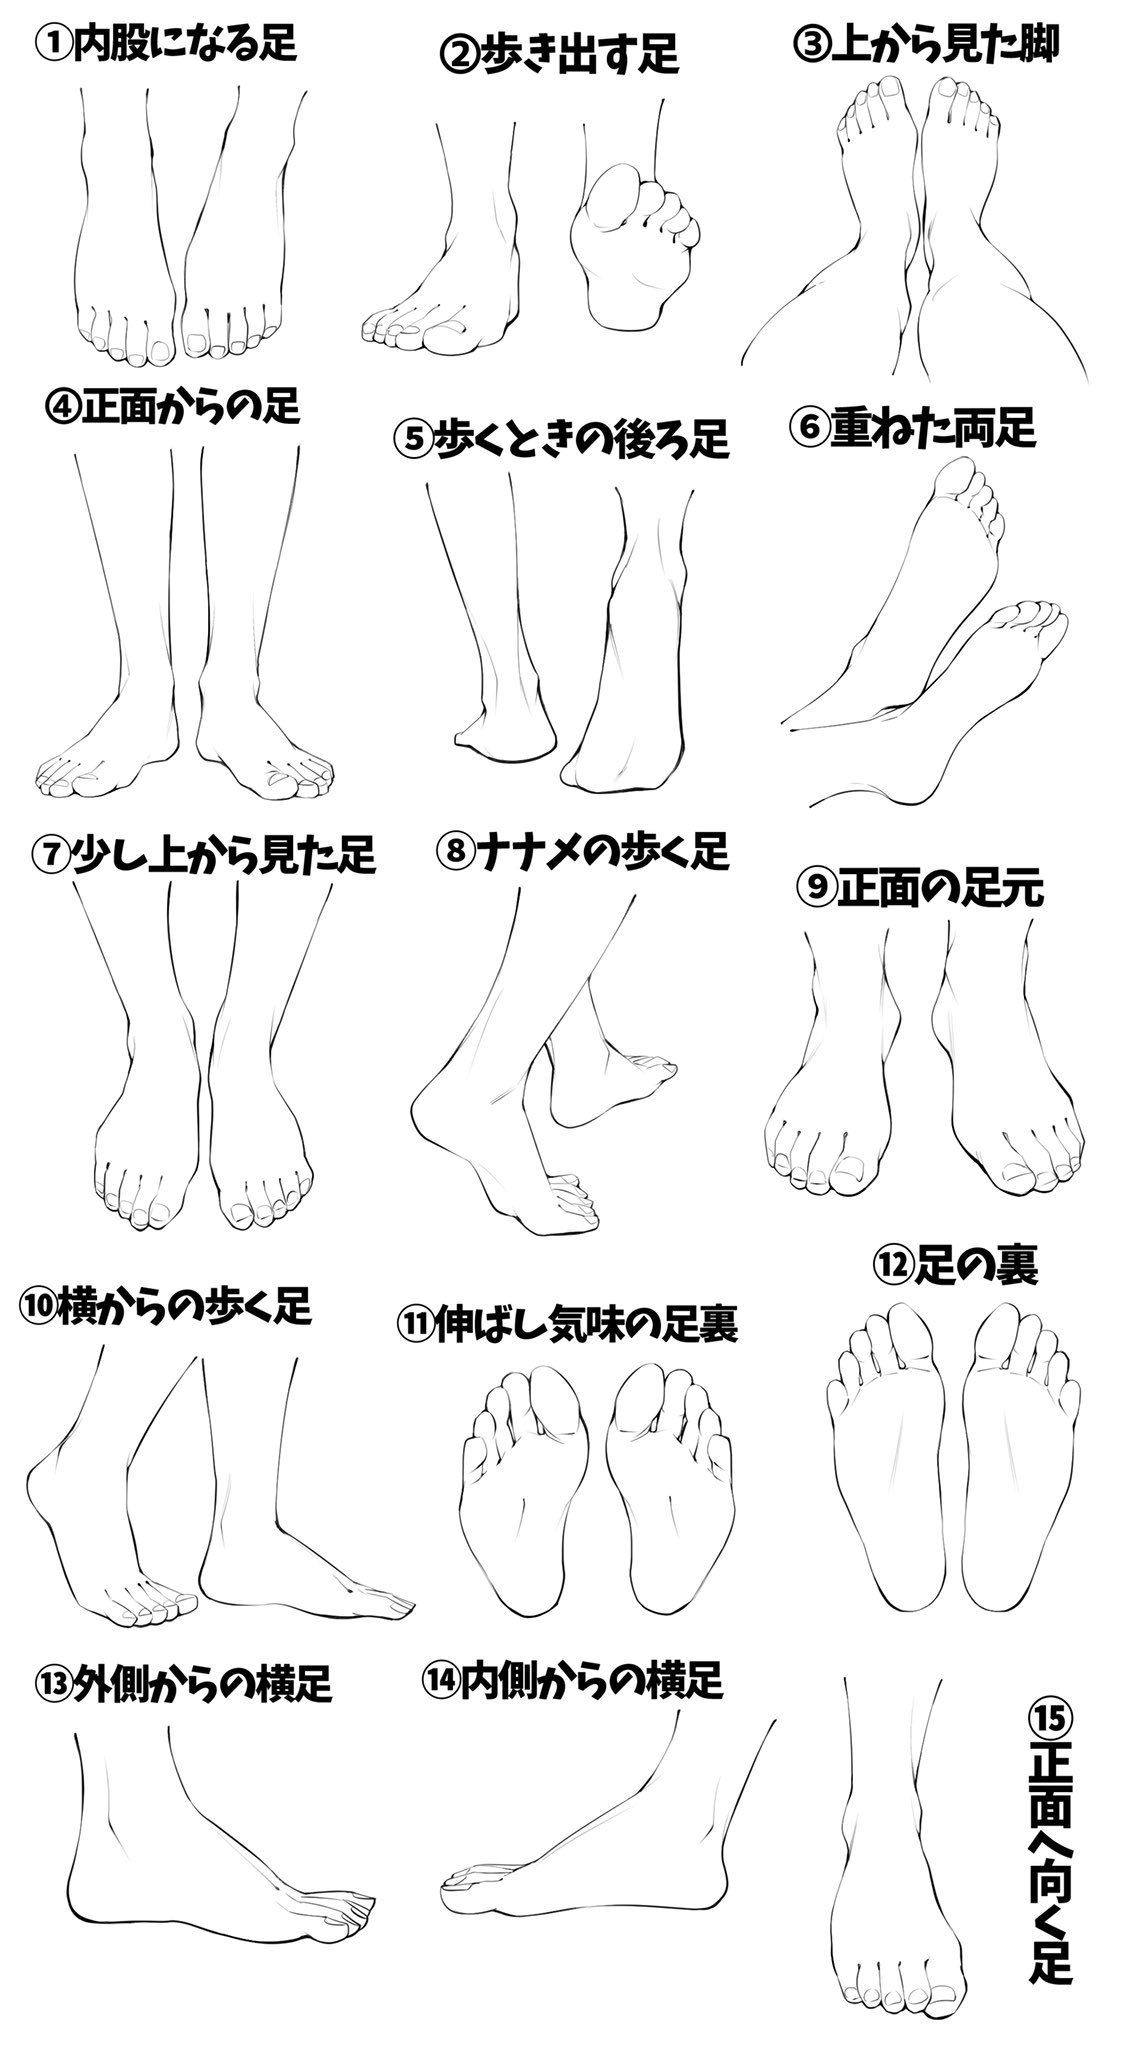 吉村拓也 イラスト講座 いろんな足を模写練習できるように 足パターン模写表 を作りました 線画タイプ と 肌色タイプ T Co Gc6blgoscv Twitter